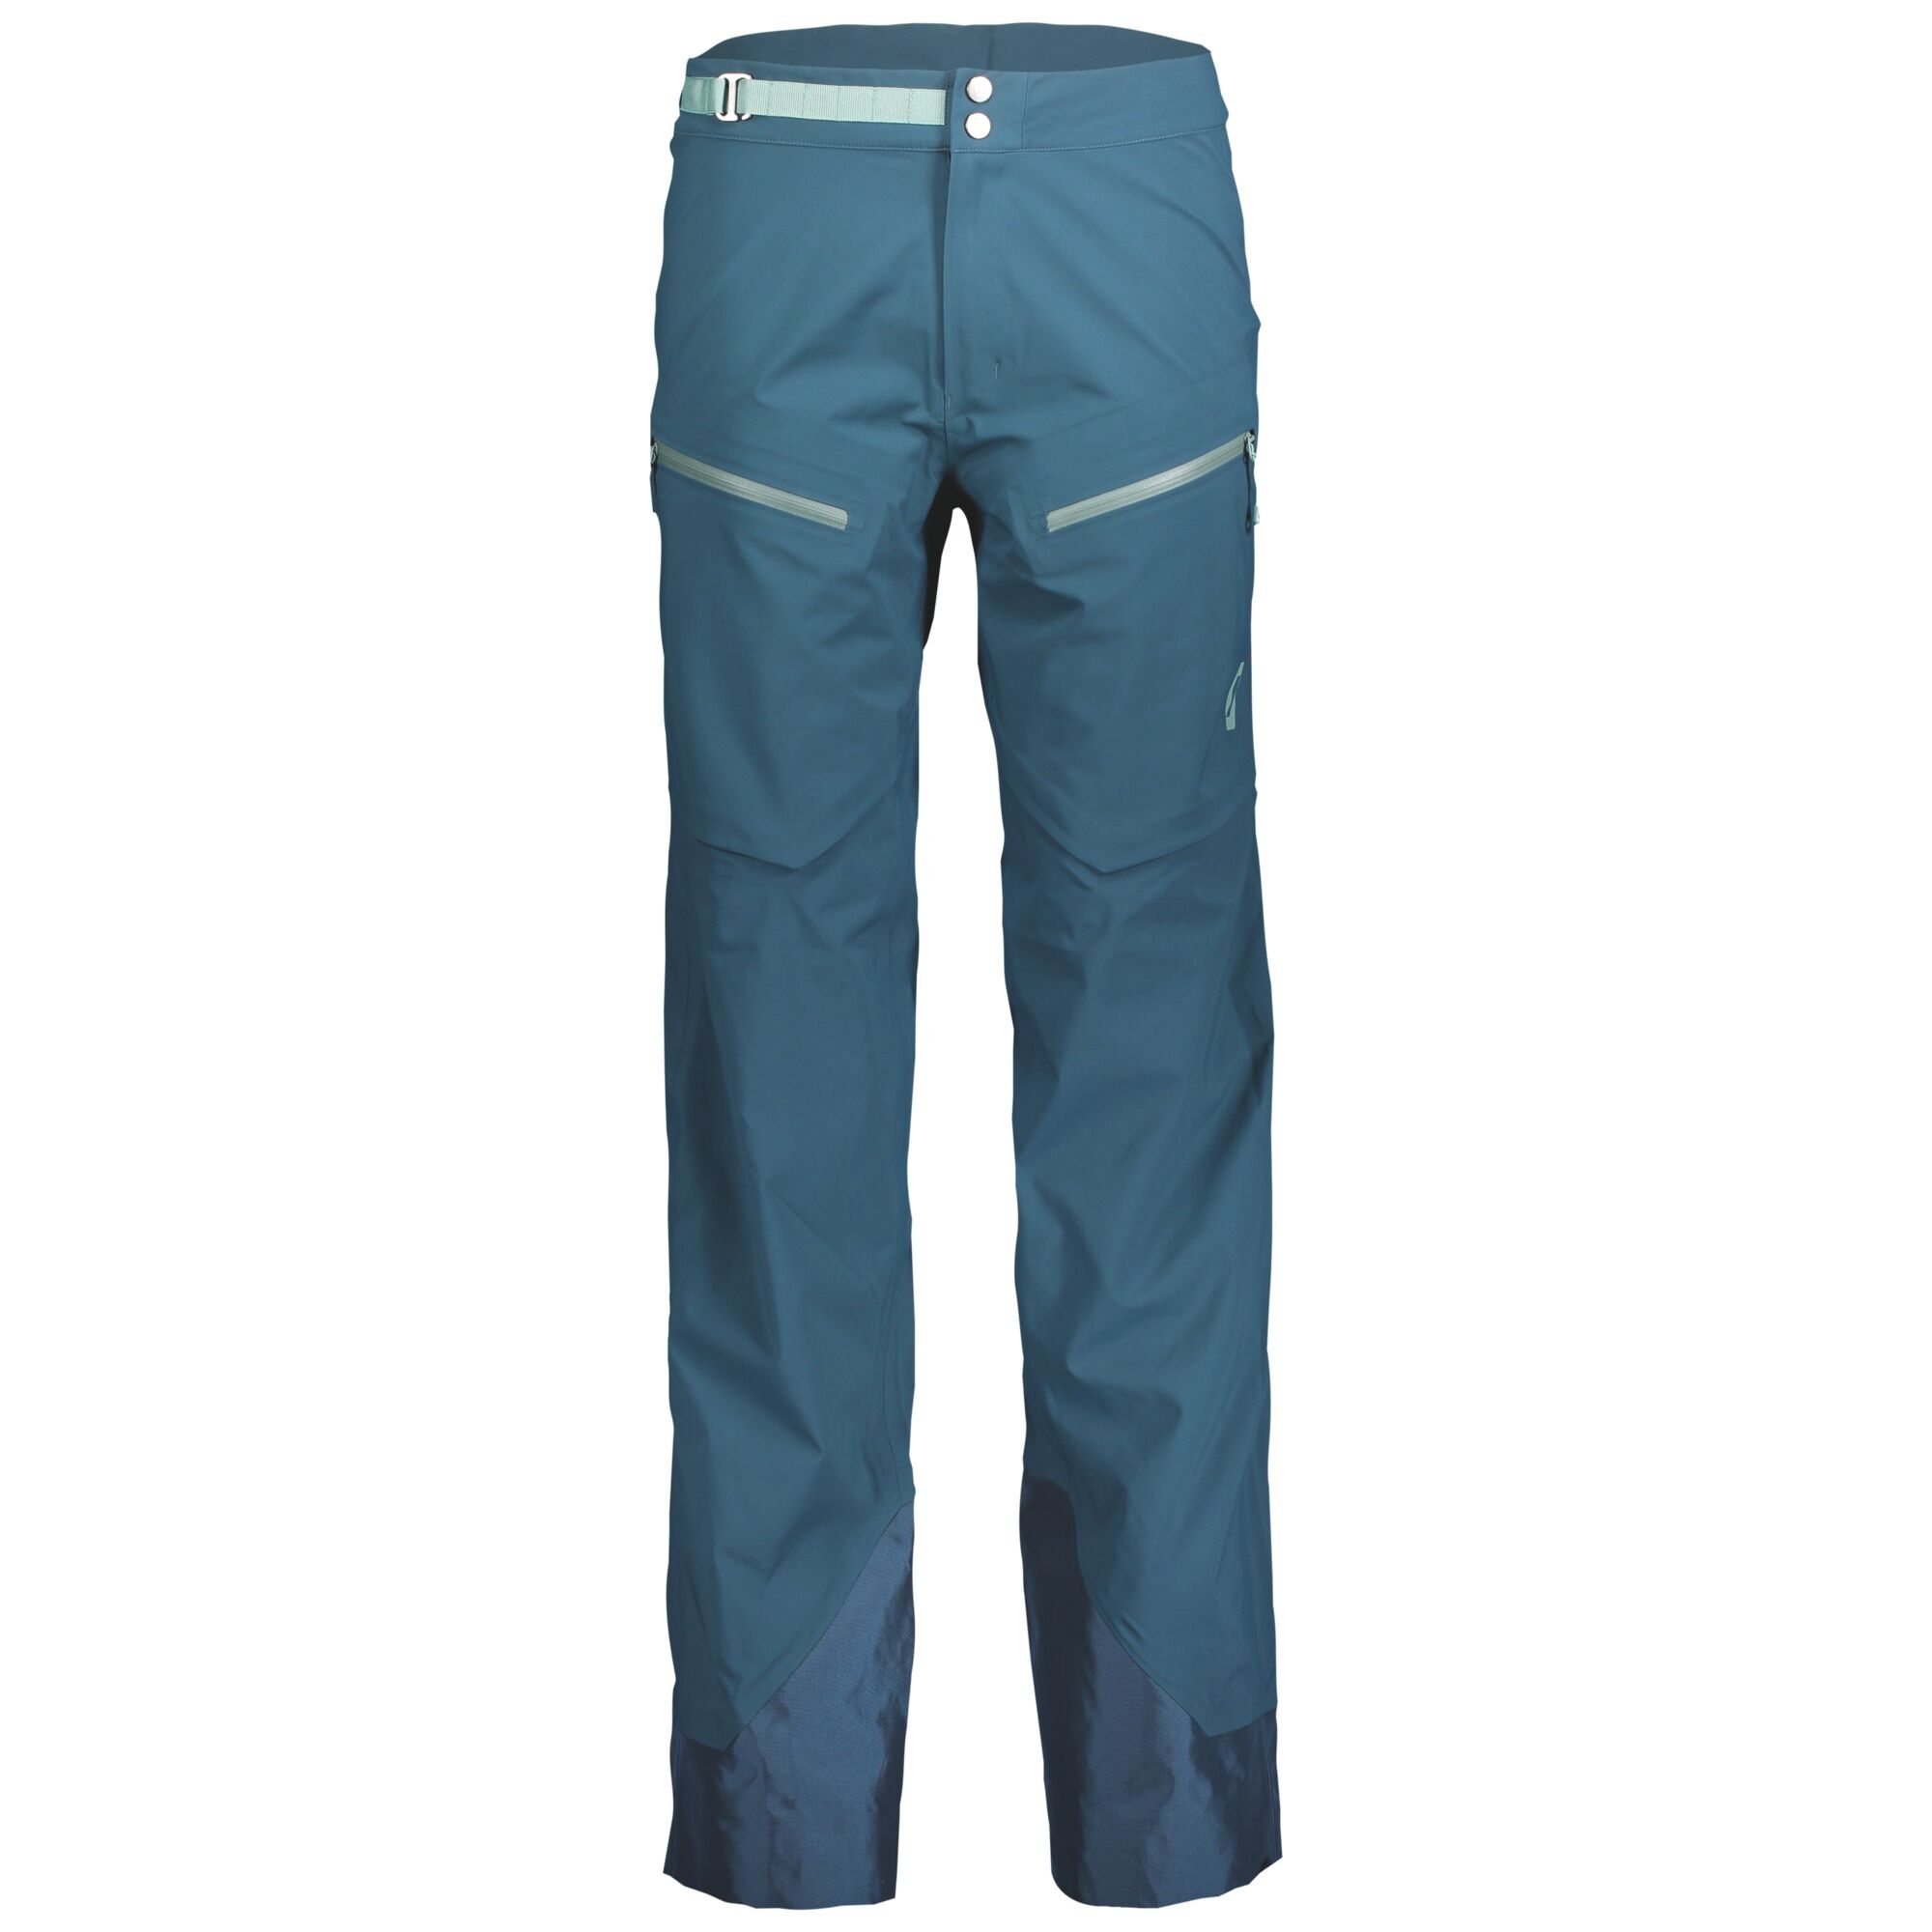 Scott Line Chaser 3L - Ski pants - Men's